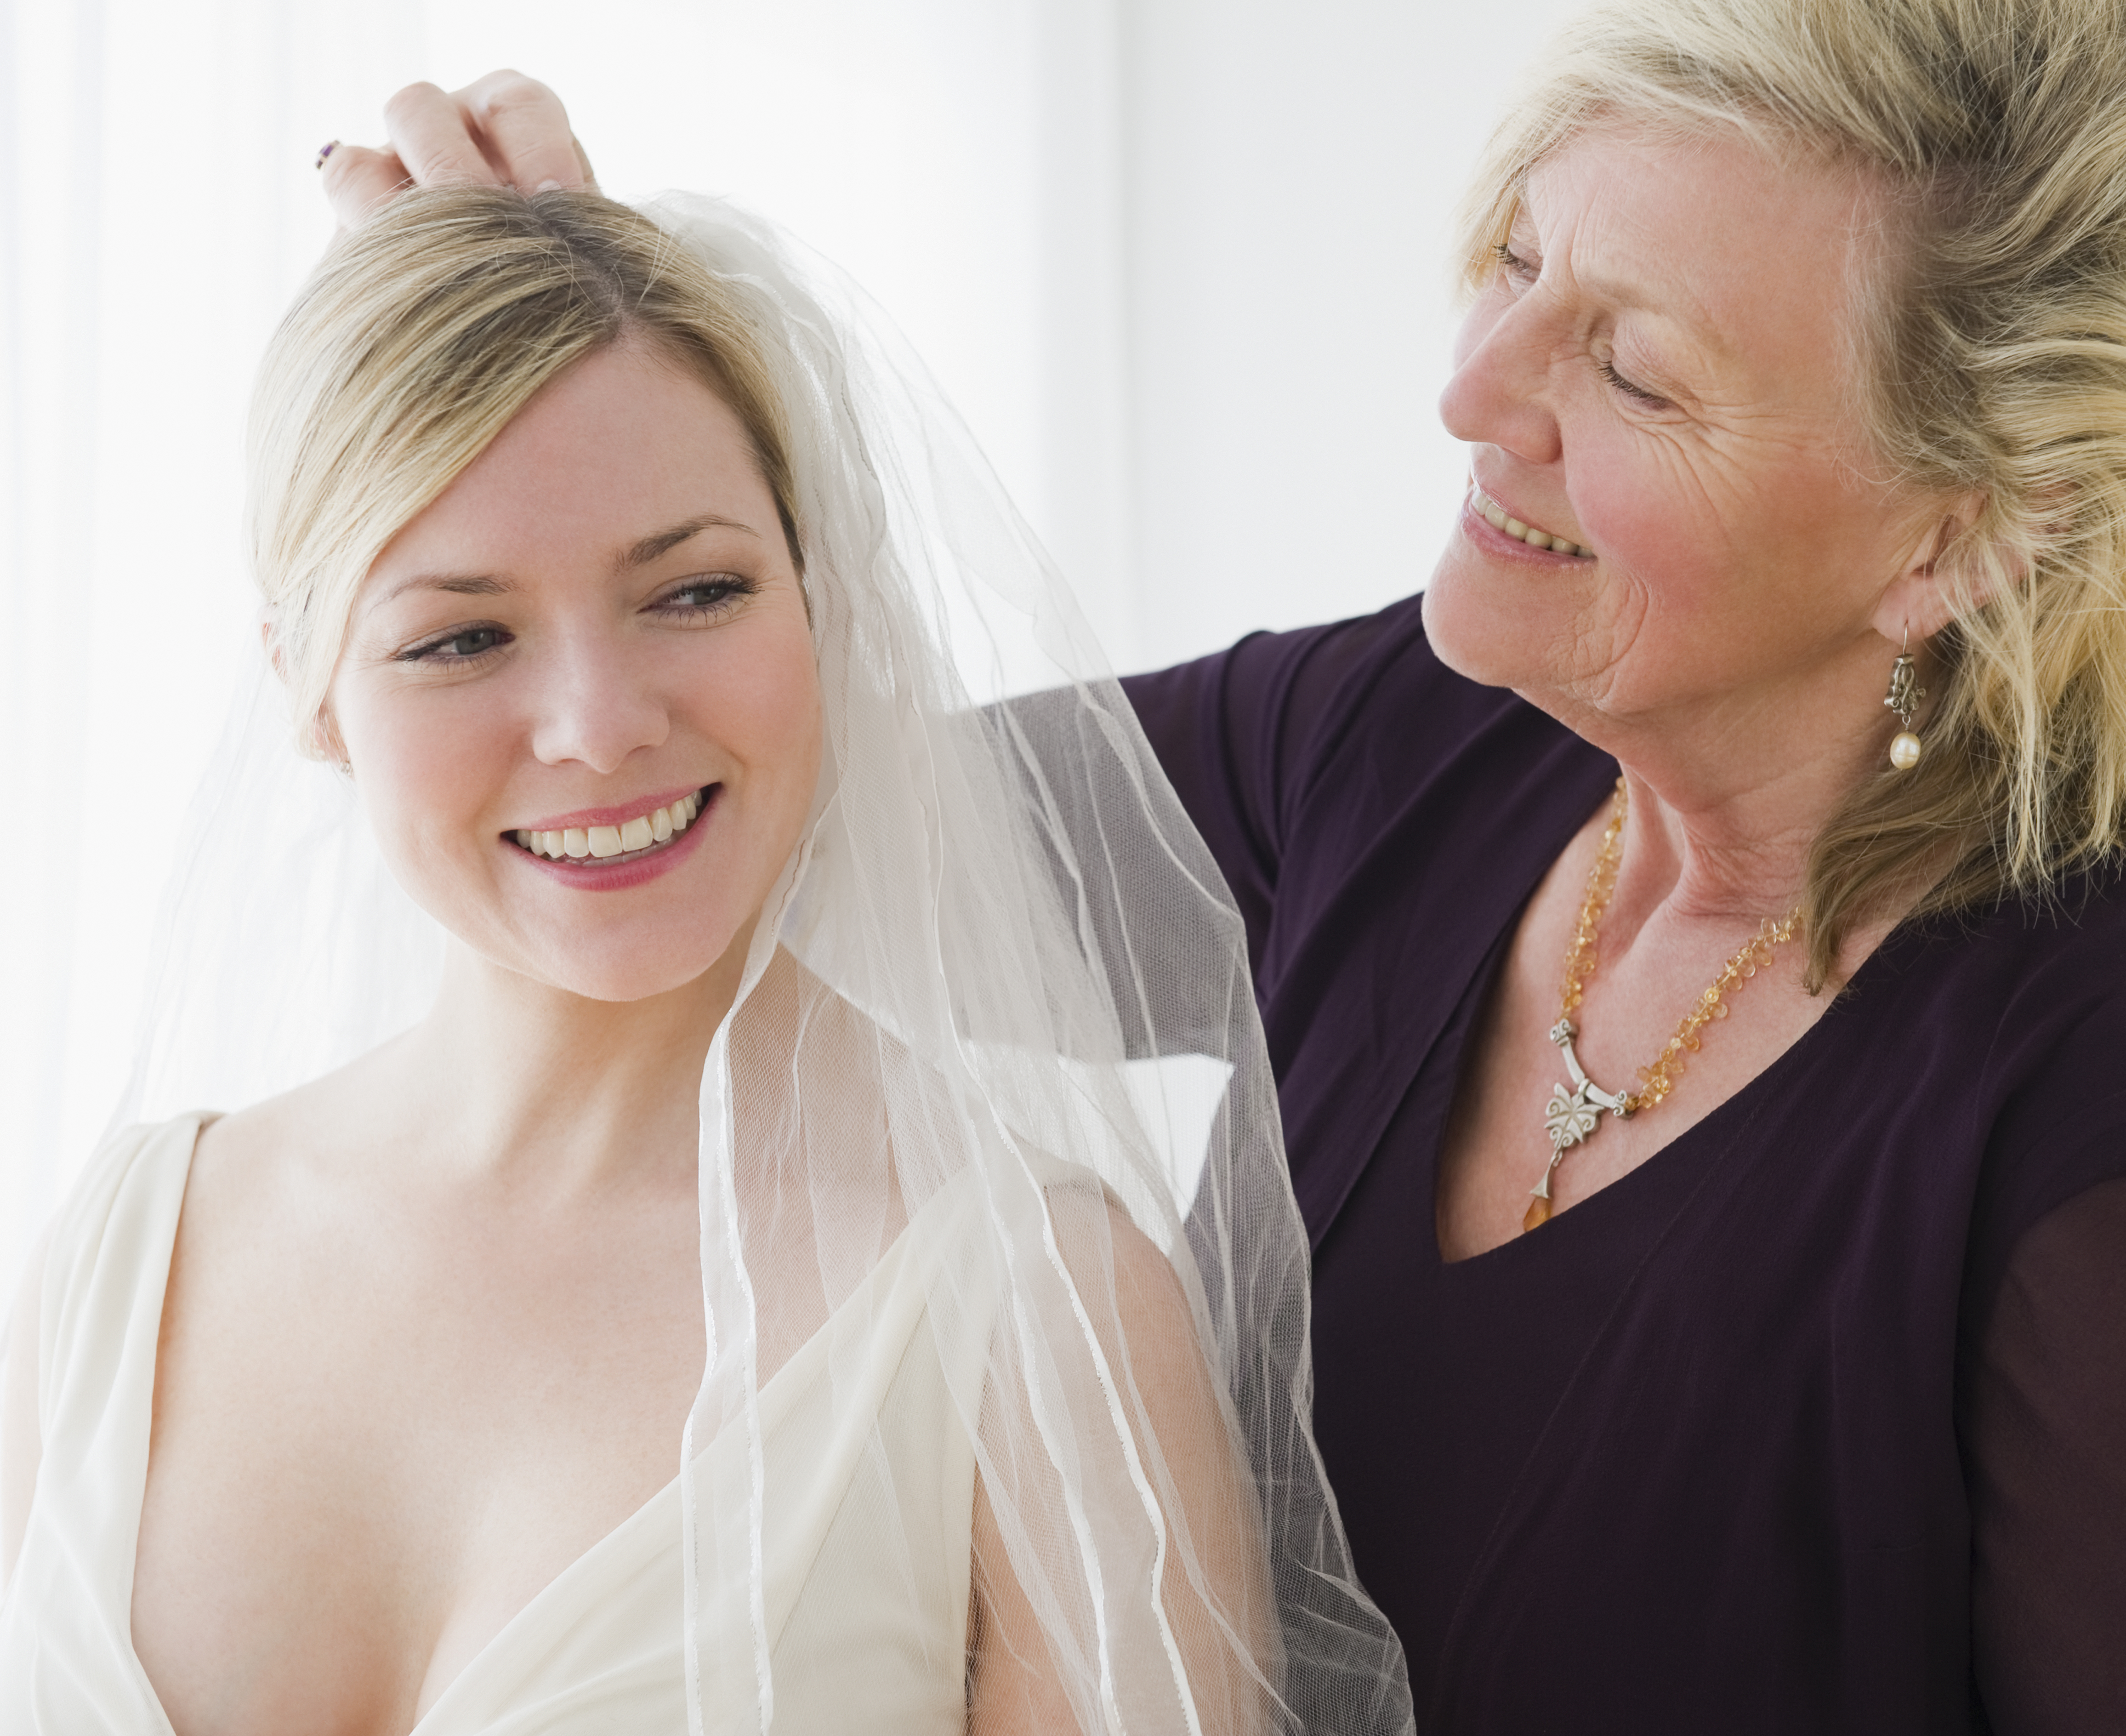 Eine ältere Frau hilft einer jüngeren Frau beim Anprobieren eines Hochzeitskleides | Quelle: Getty Images